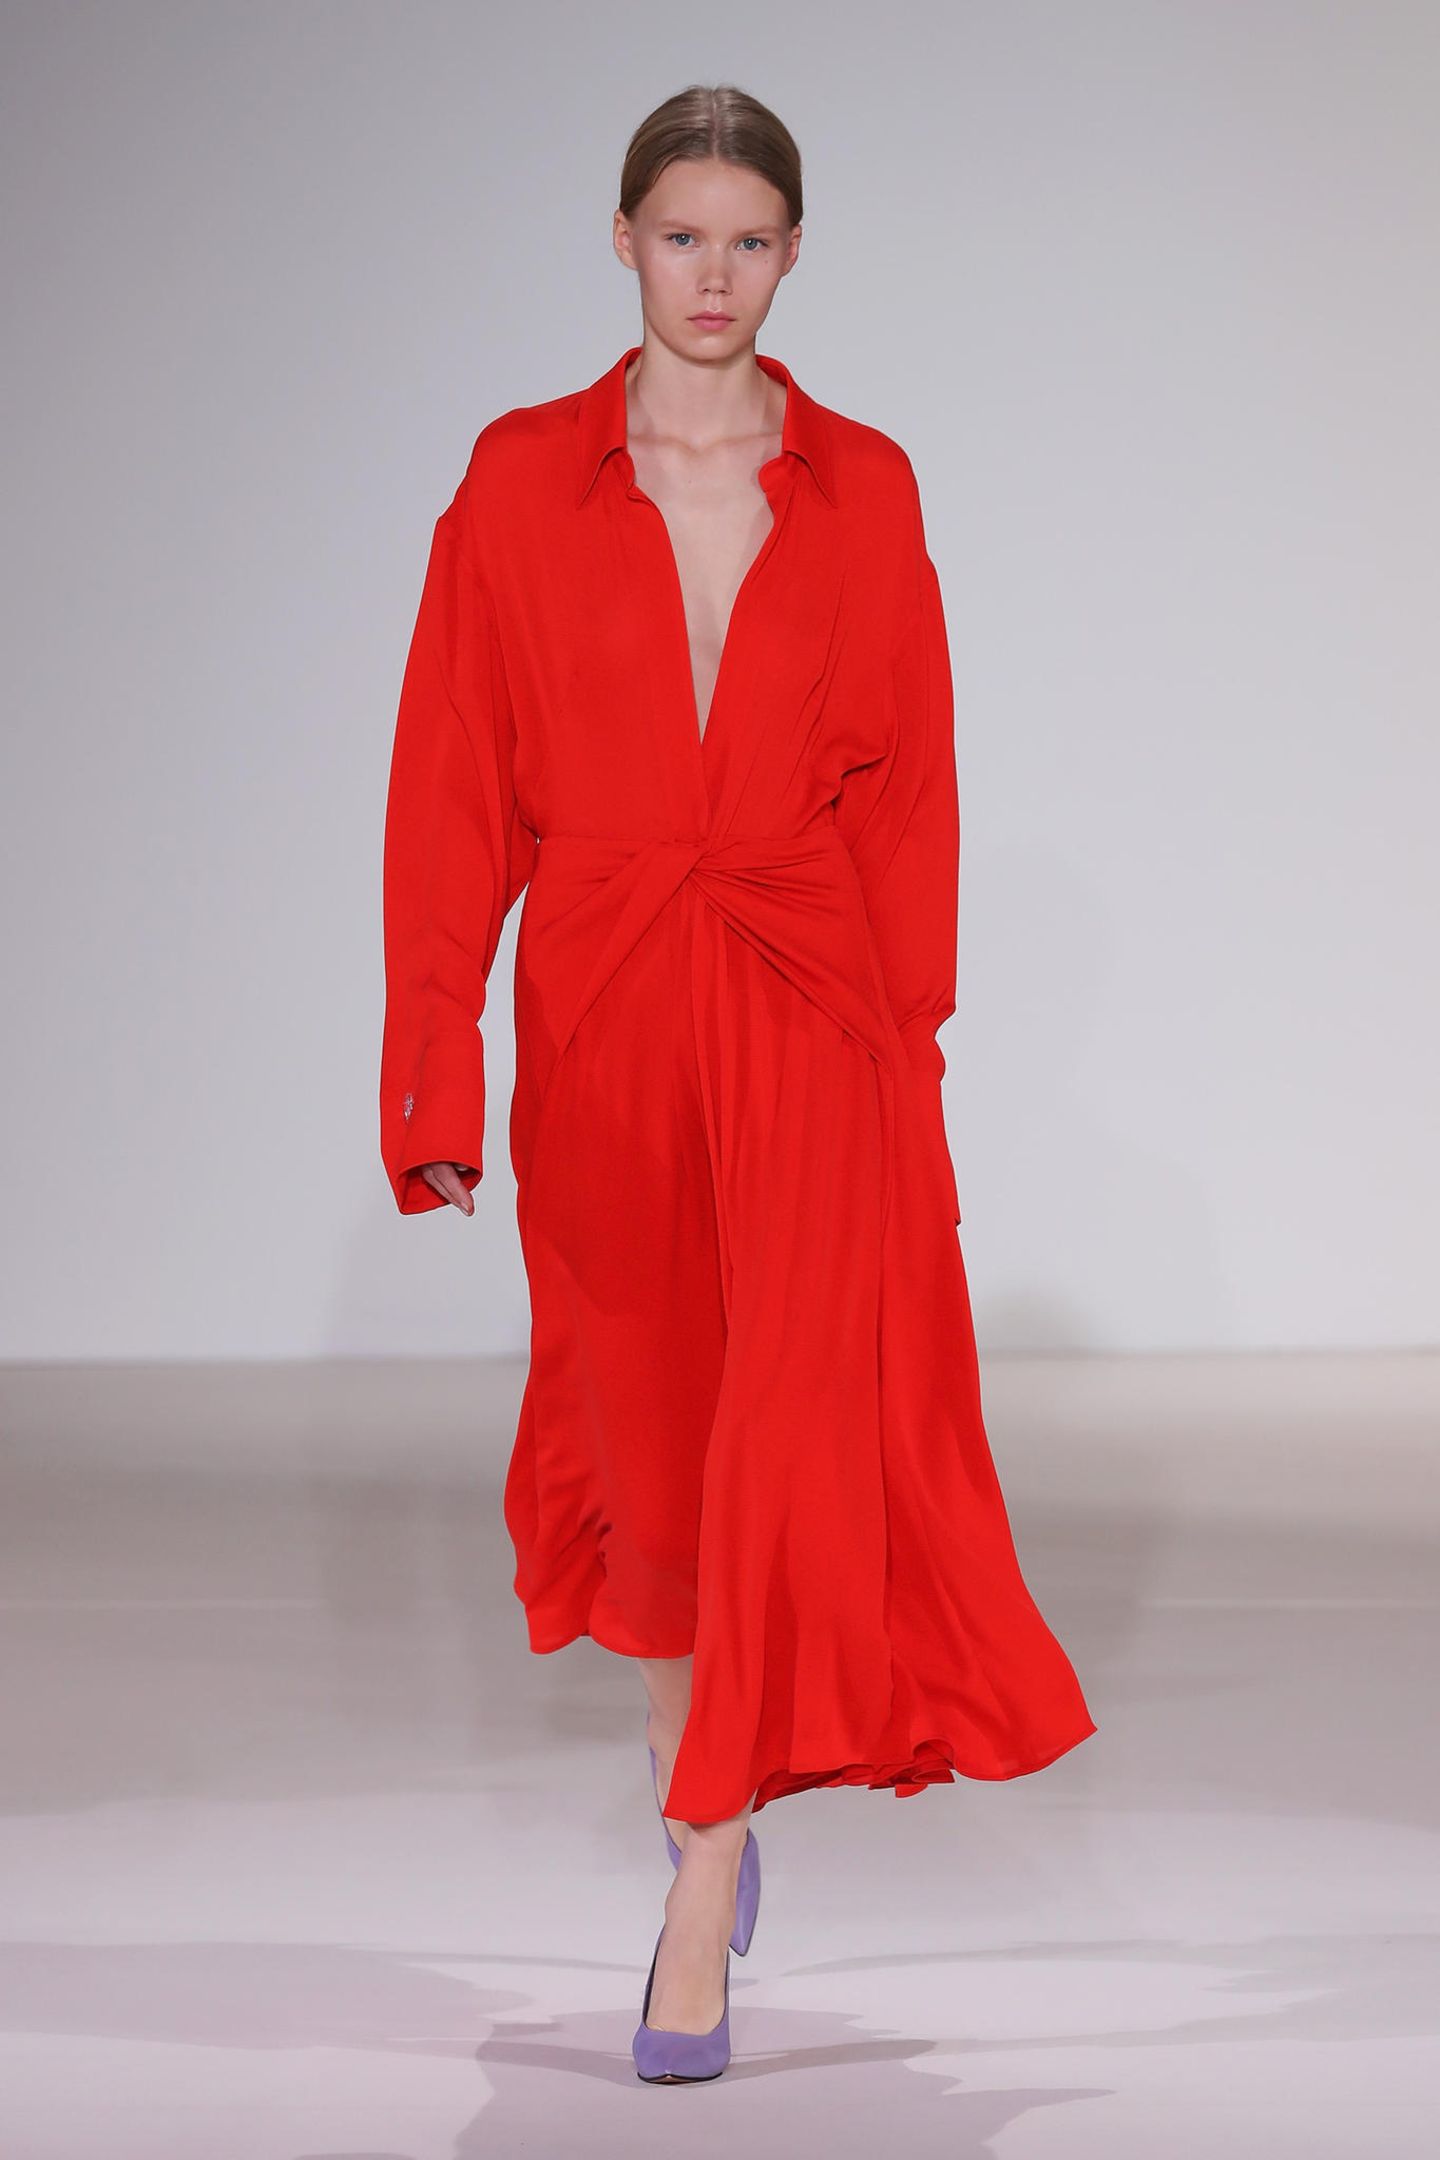 Rotes Kleid bei Victoria Beckham